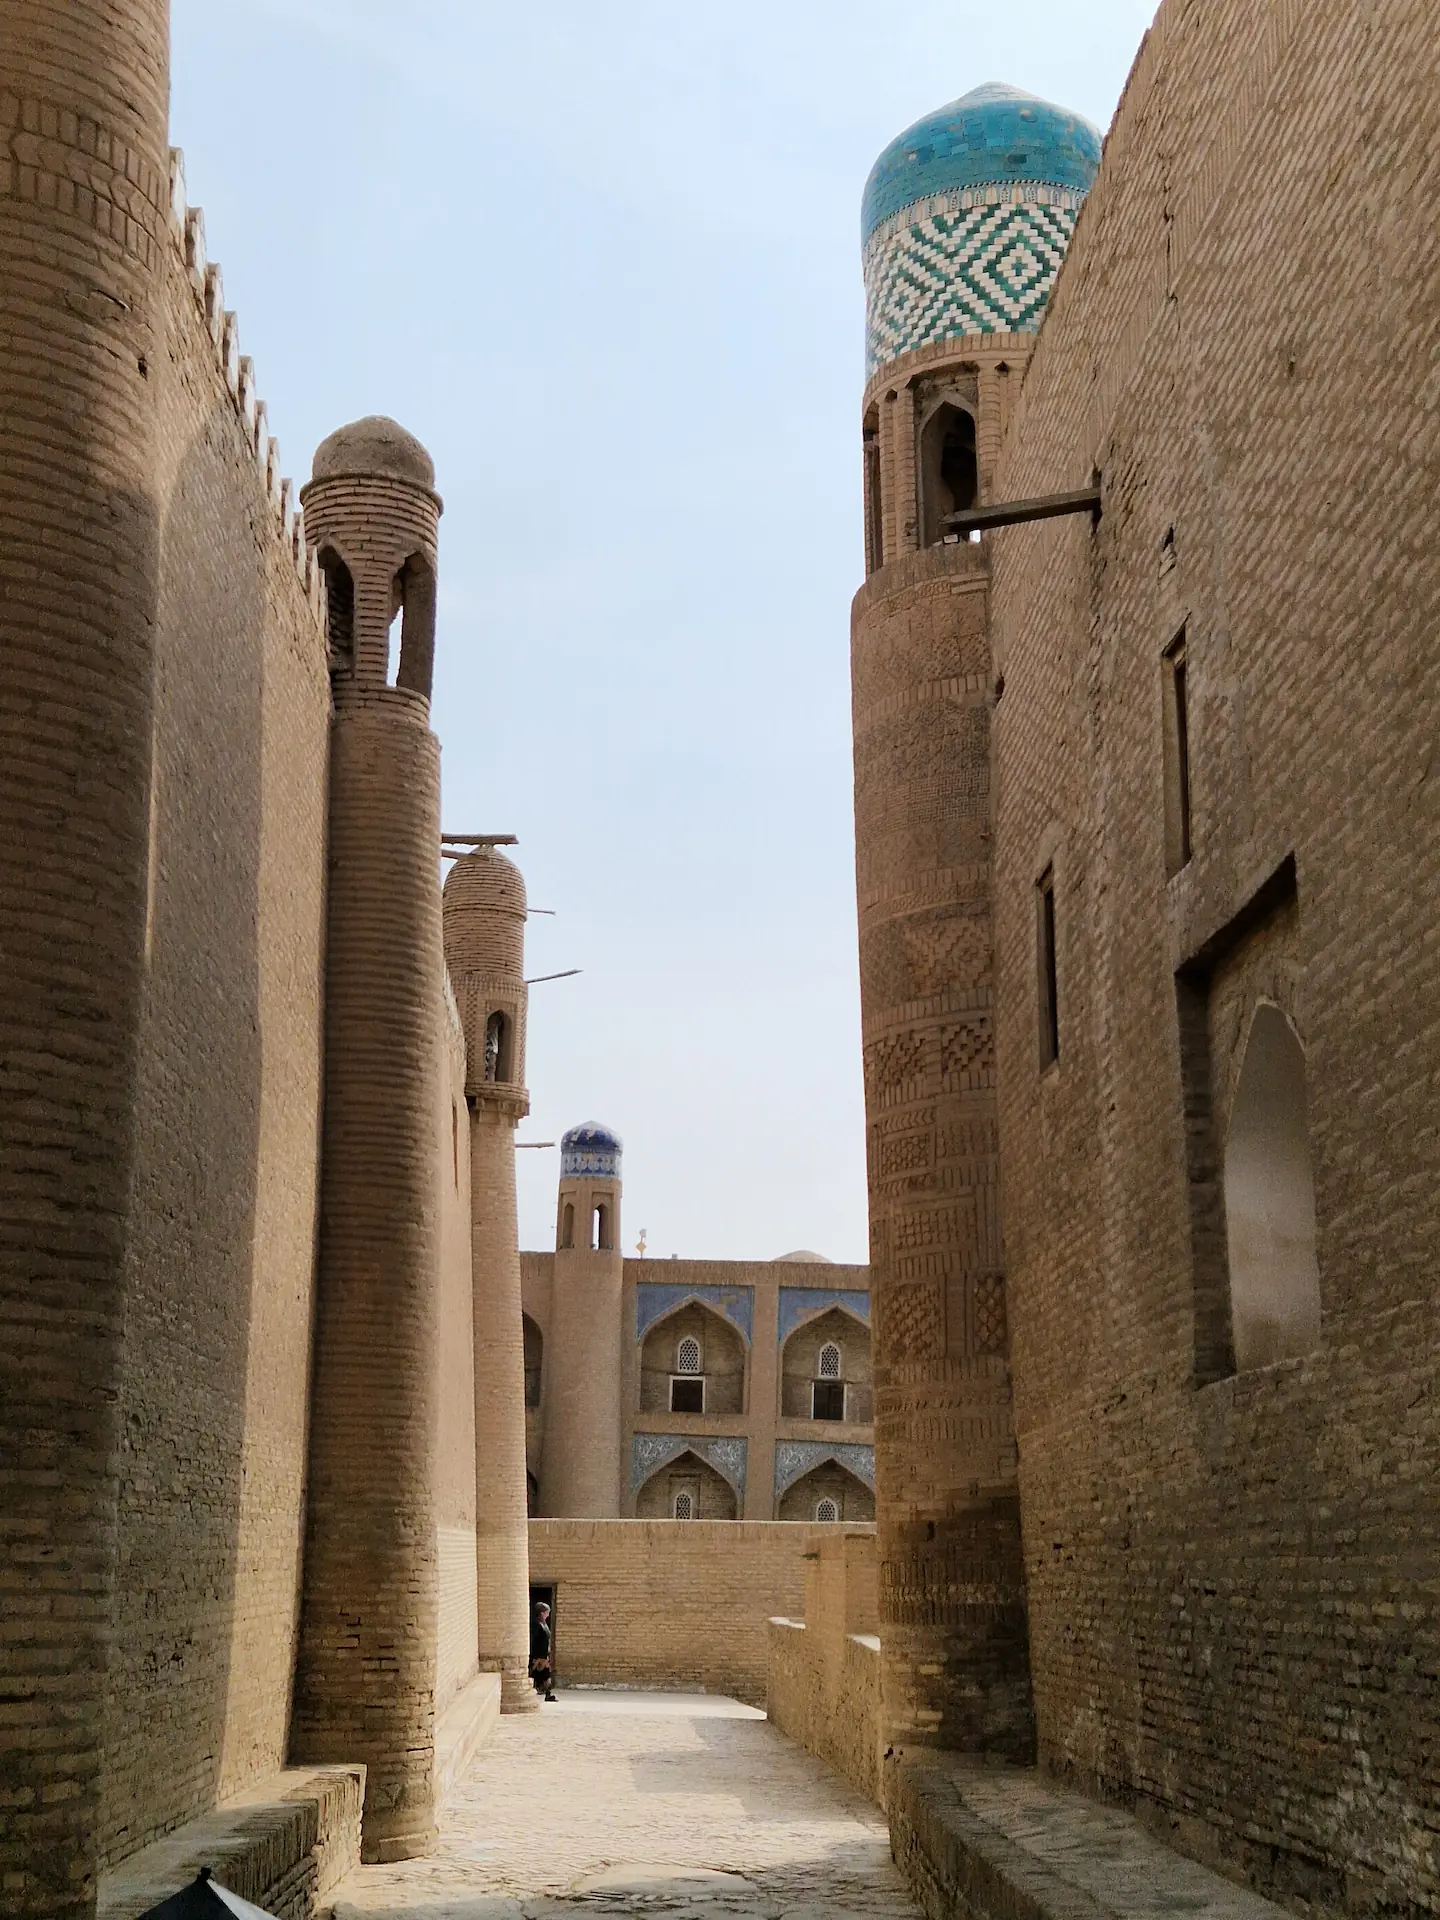 Une petite rue vide entre deux grands murs en pierre. On voit une madrassa en fond.